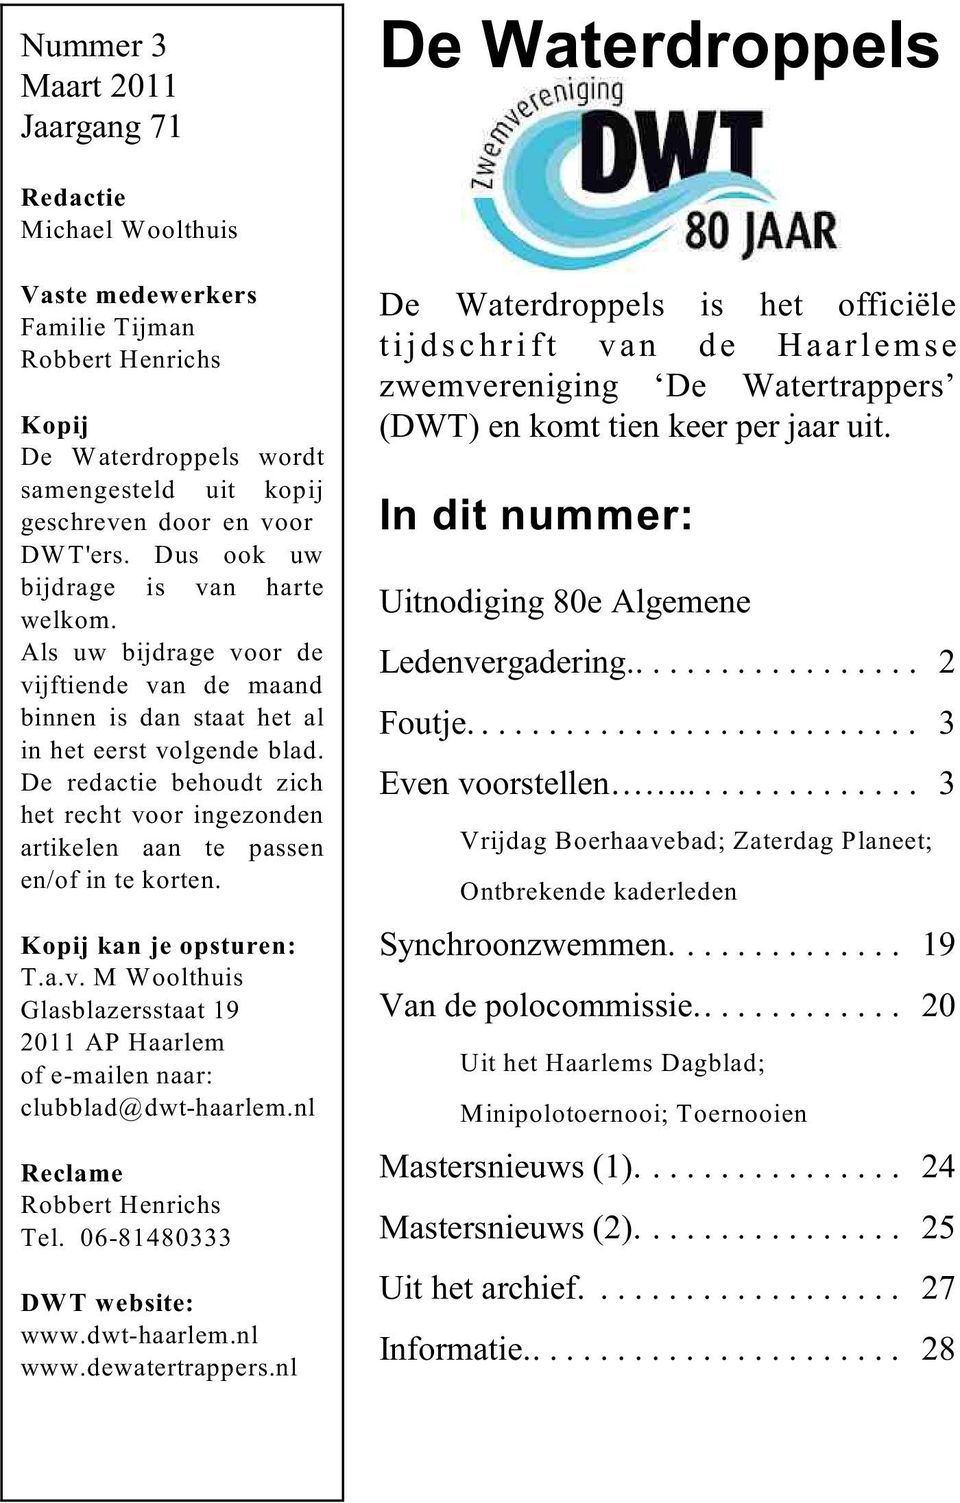 De redactie behoudt zich het recht voor ingezonden artikelen aan te passen en/of in te korten. Kopij kan je opsturen: T.a.v. M Woolthuis Glasblazersstaat 19 2011 AP Haarlem of e-mailen naar: clubblad@dwt-haarlem.